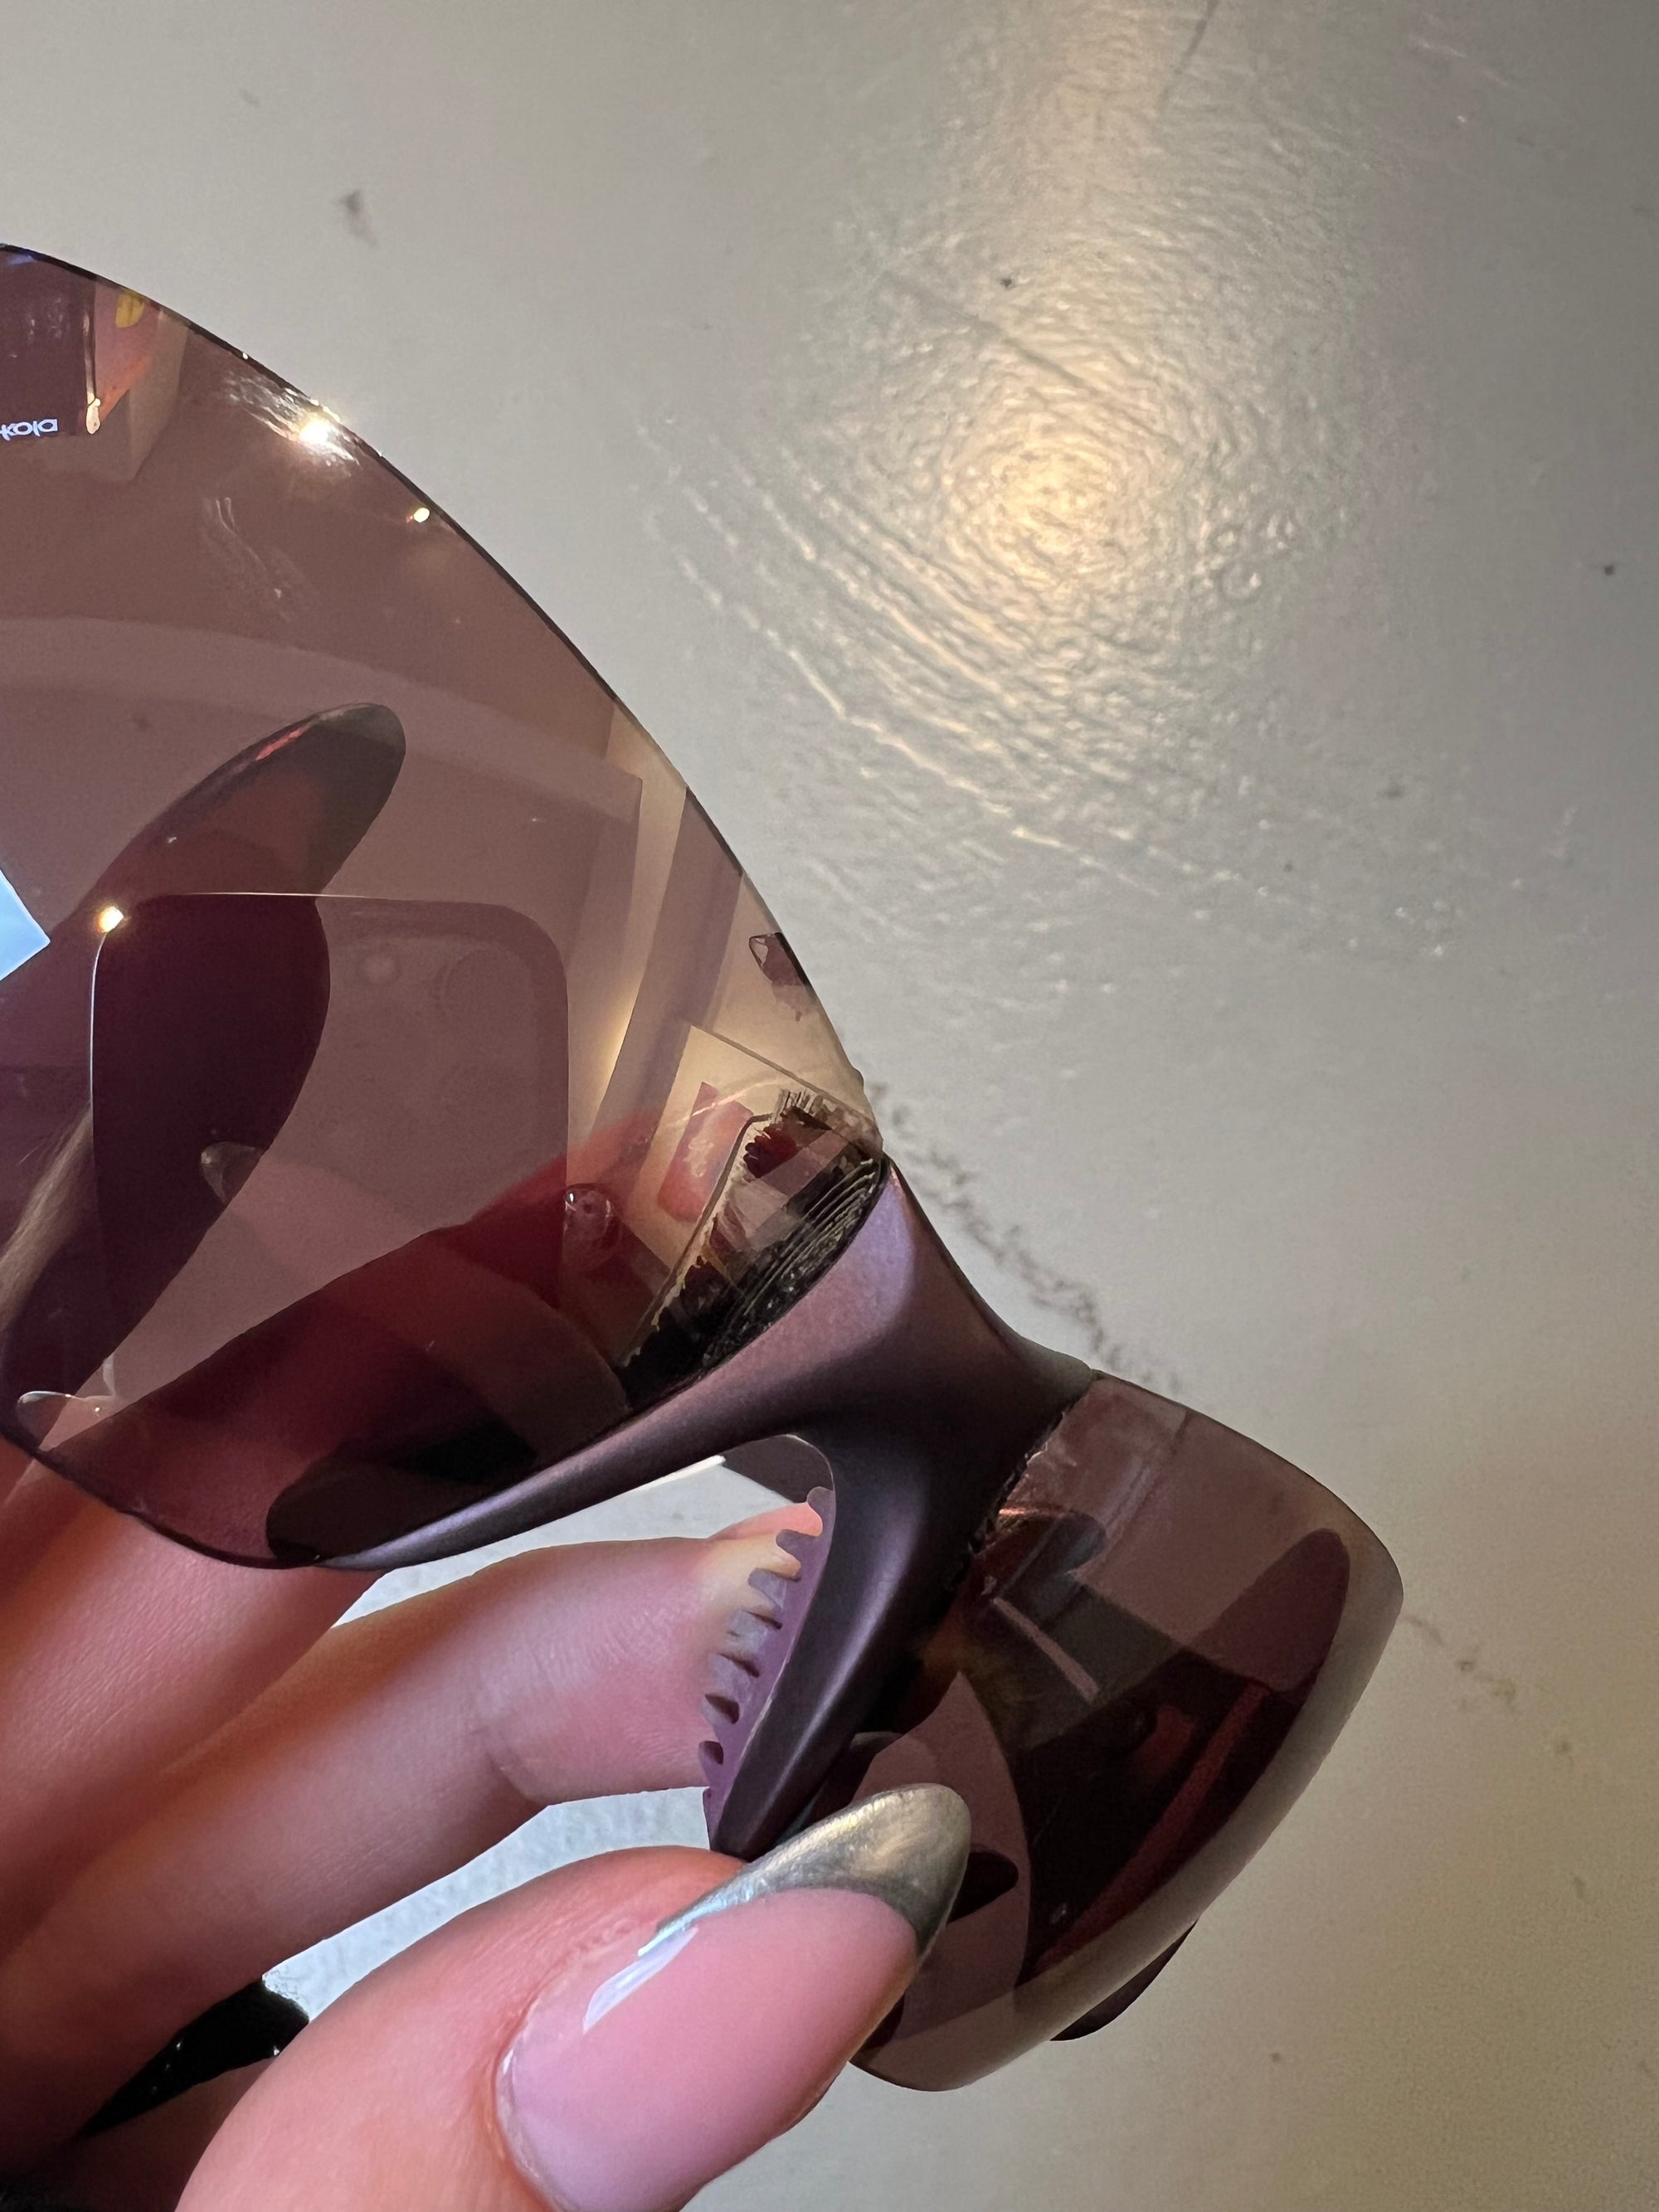 Detailliertes produktbild von Nike Sunglasses Purple von glässer